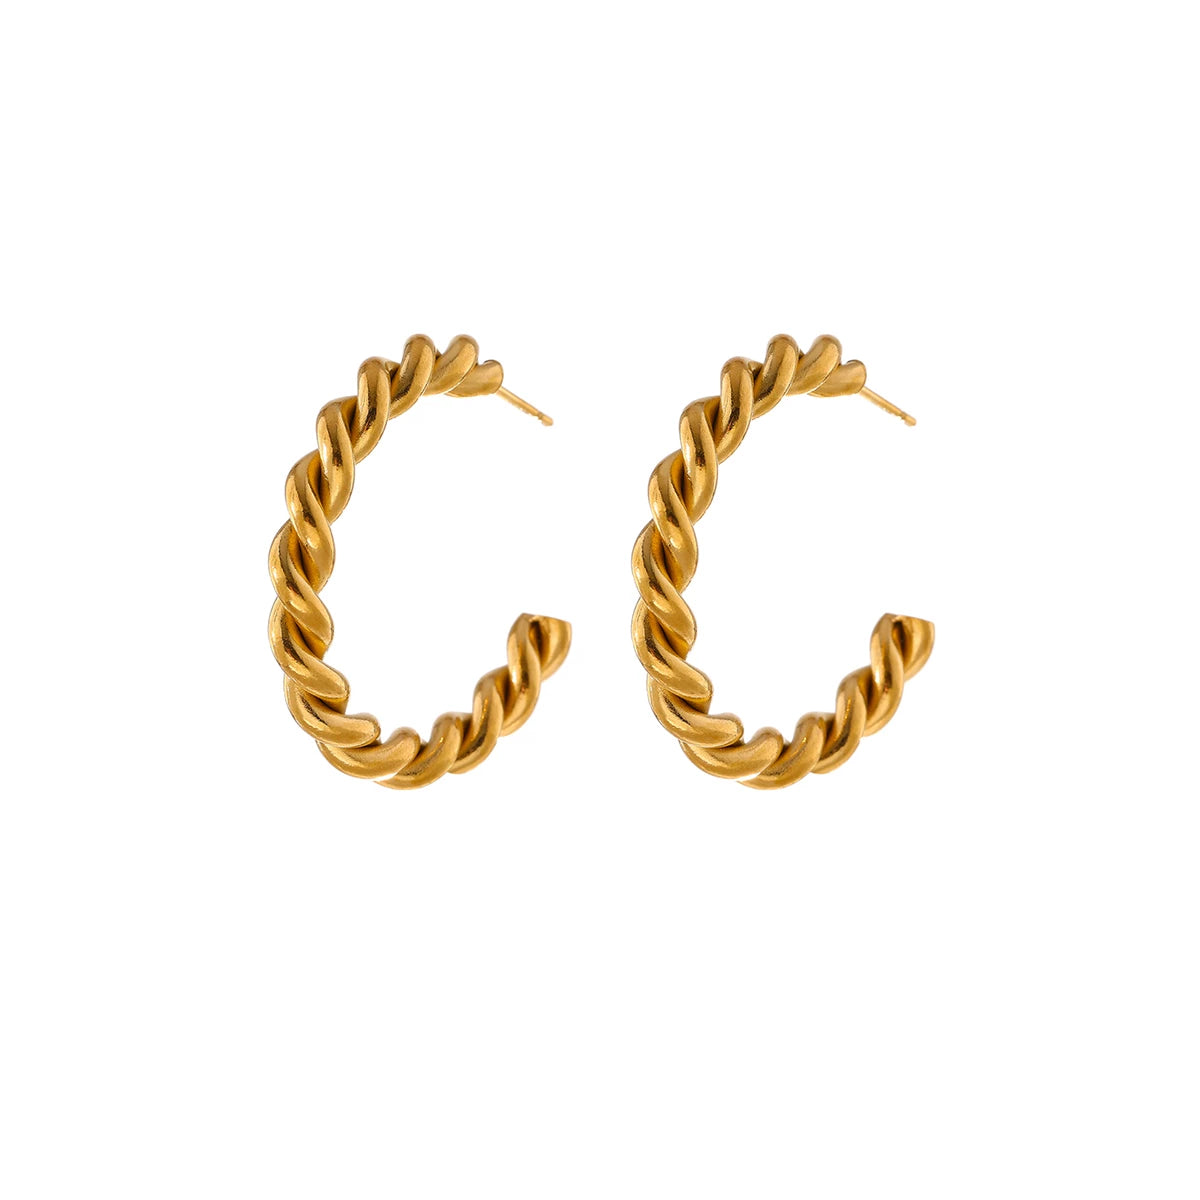 Madison Ohrringe Yasemen Store Schmuck Accessoires Edelstahl Stainless Steel 18K Vergoldet Gold jewel jewelry earring